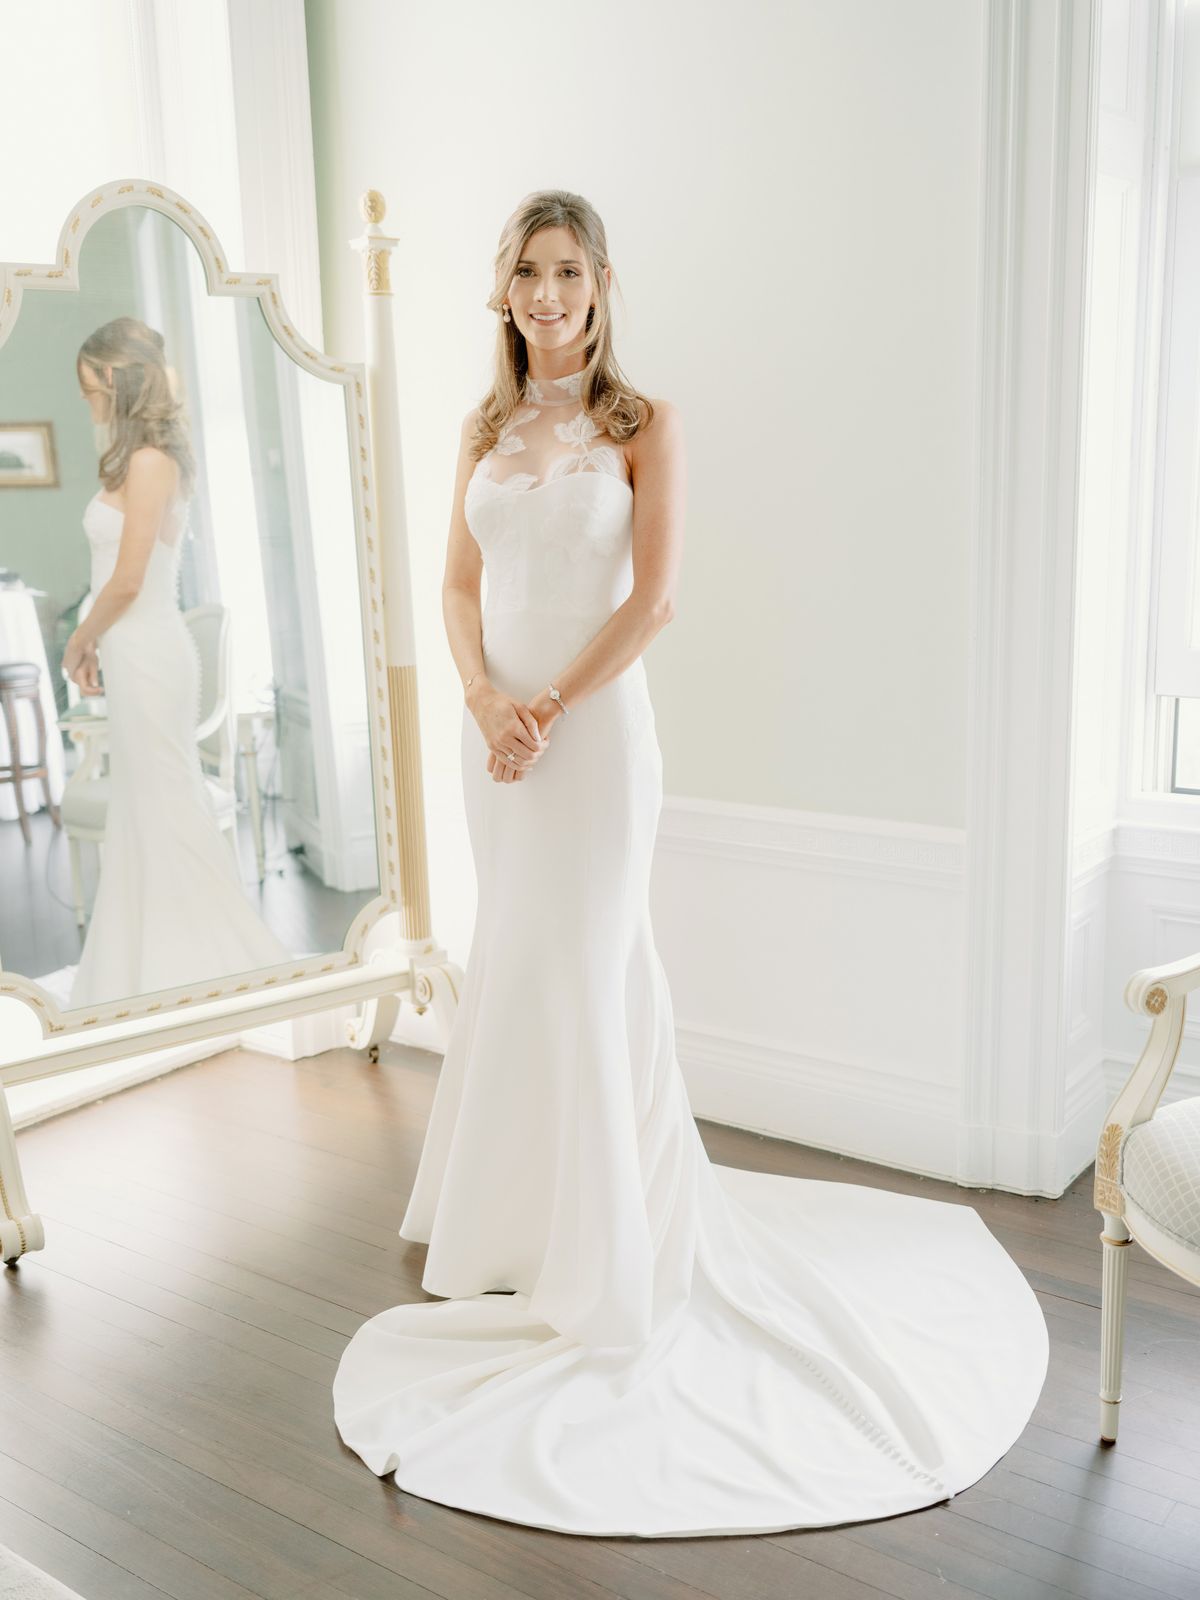 A Carolina Herrera wedding dress worn by the bride. Luxury wedding dress image by Jenny Fu Studio